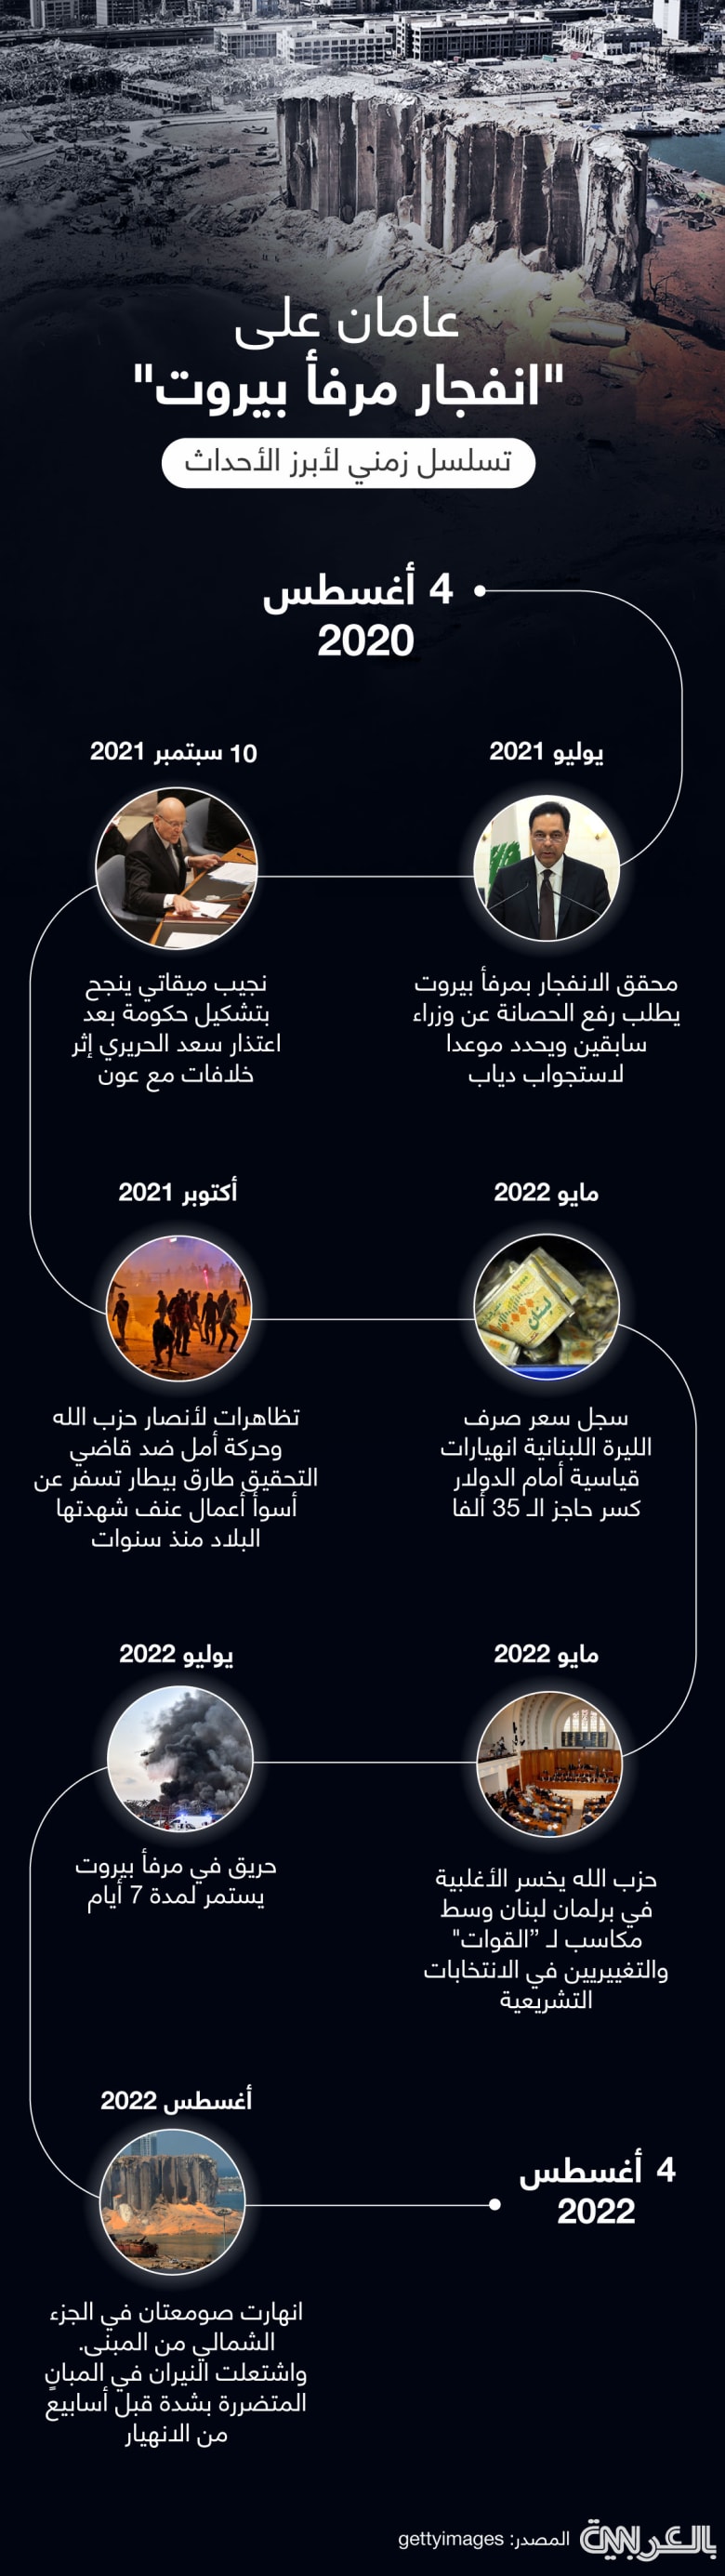 lebanon-timeline-2y-blast-infographic